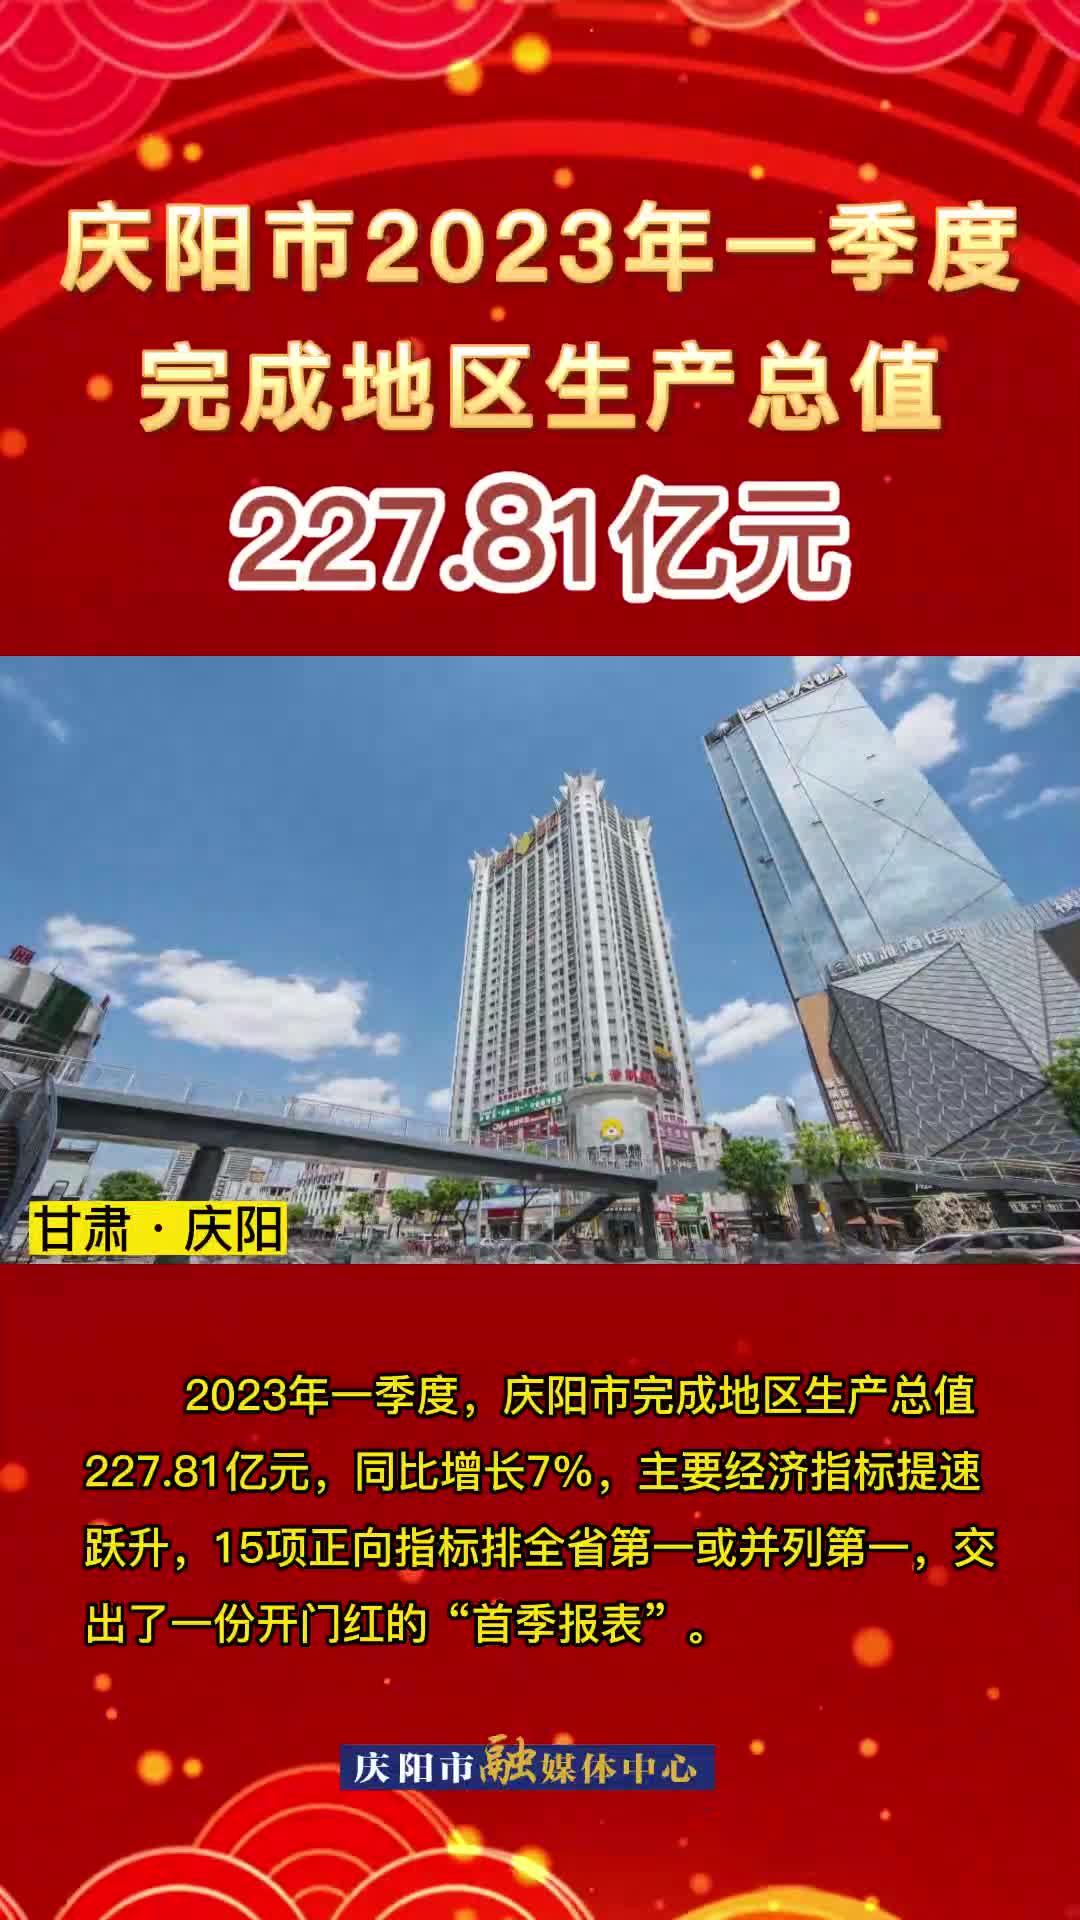 庆阳市2023年第一季度完成地区生产总值227.81亿元